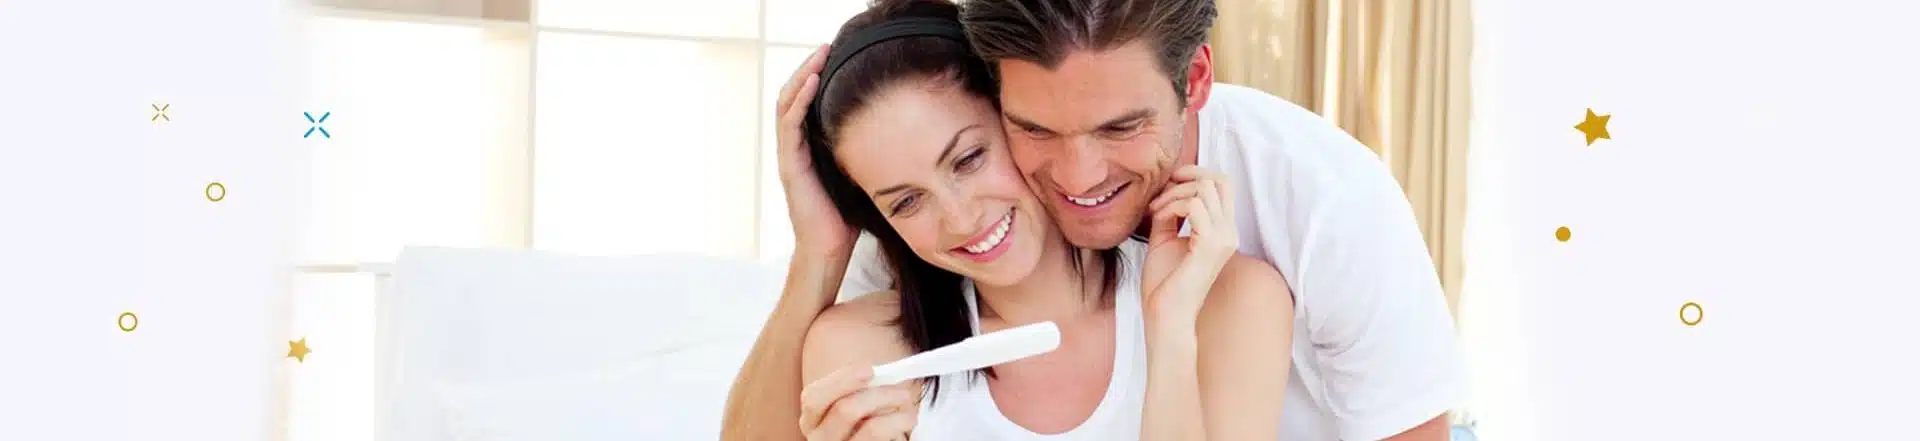 גבר ואישה מסתכלים בשמחה על בדיקת הריון